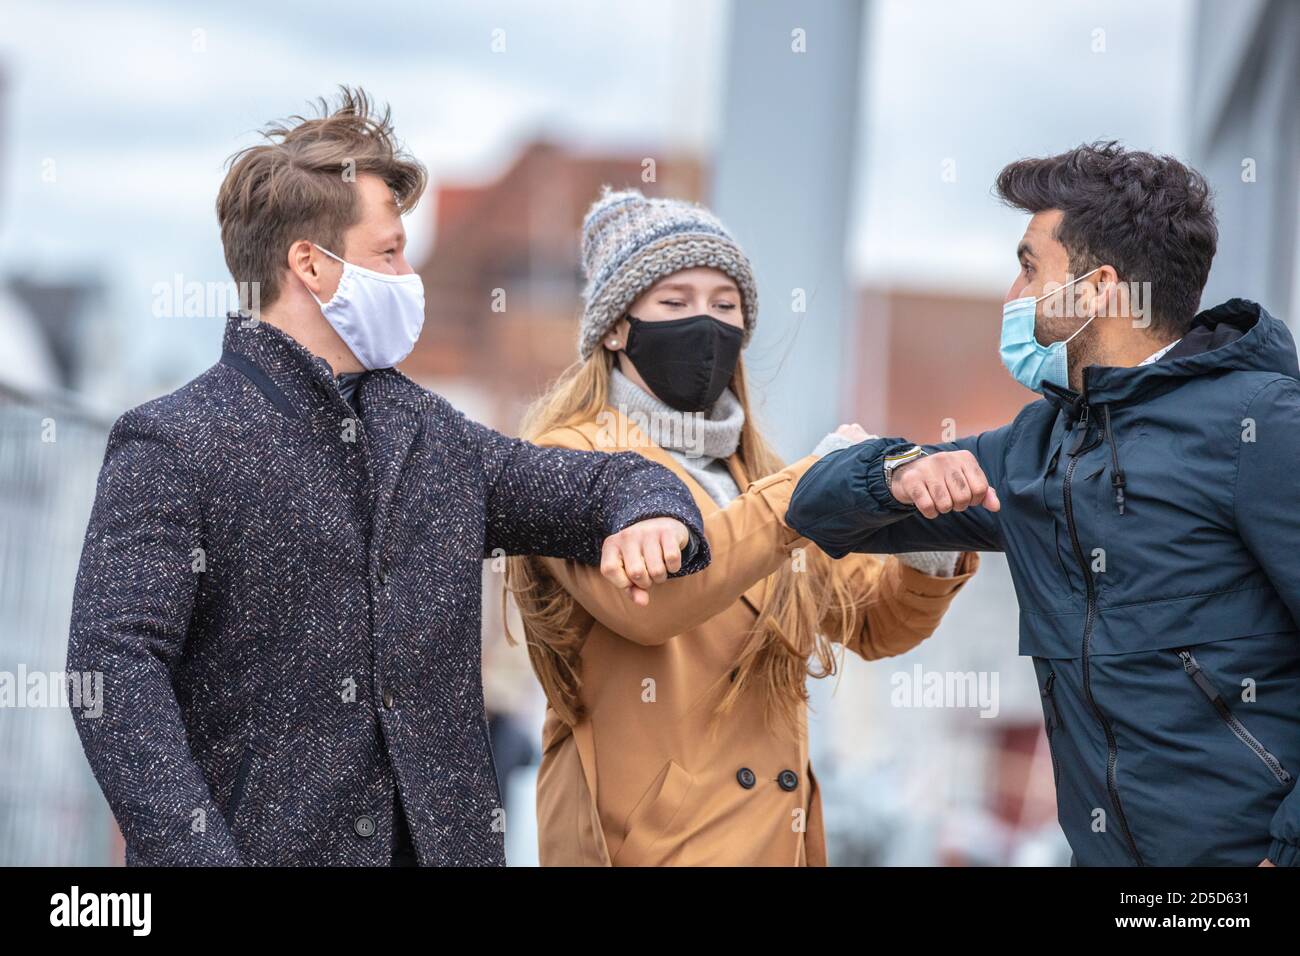 Zwei Männer und eine Frau begrüssen sich mit dem Ellenbogen. Corona-Zeit mit alltäglichen Masken in der kalten Jahreszeit in der Stadt. Stock Photo